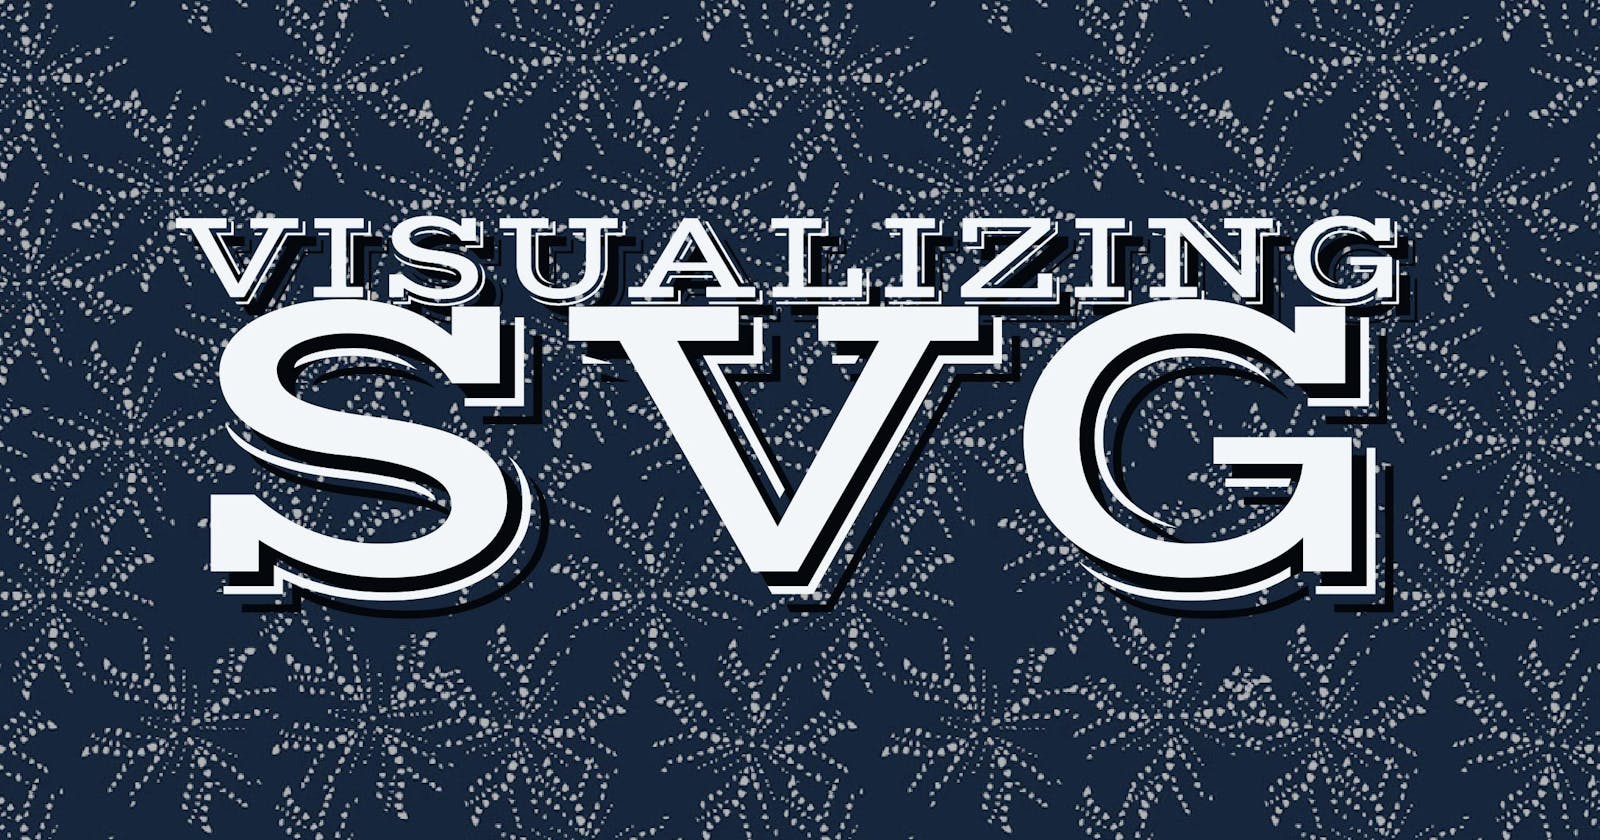 Visualizing SVG Elements